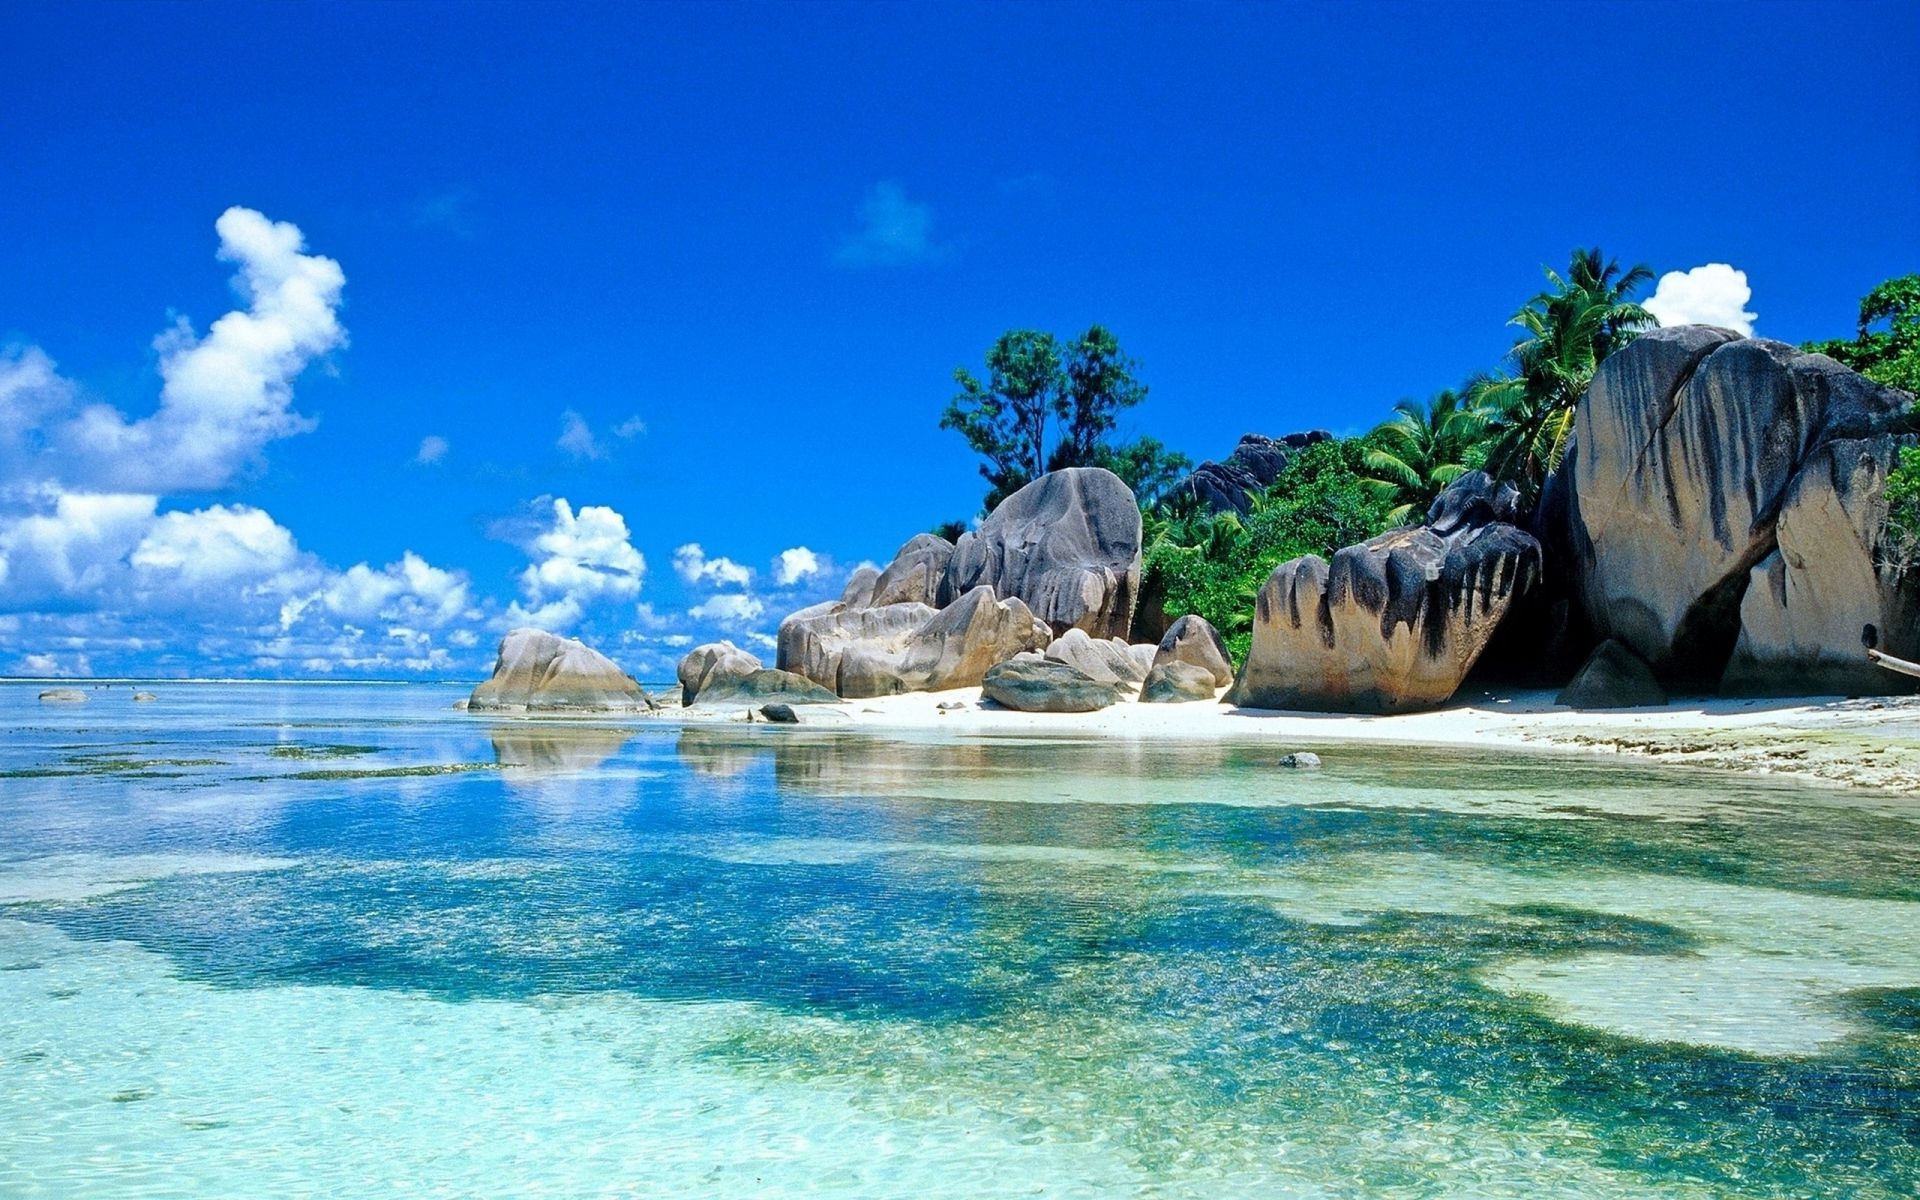 острова воды пляж океан путешествия моря море лето тропический остров небо отпуск природа песок бирюза рай релаксация пейзаж залив волна